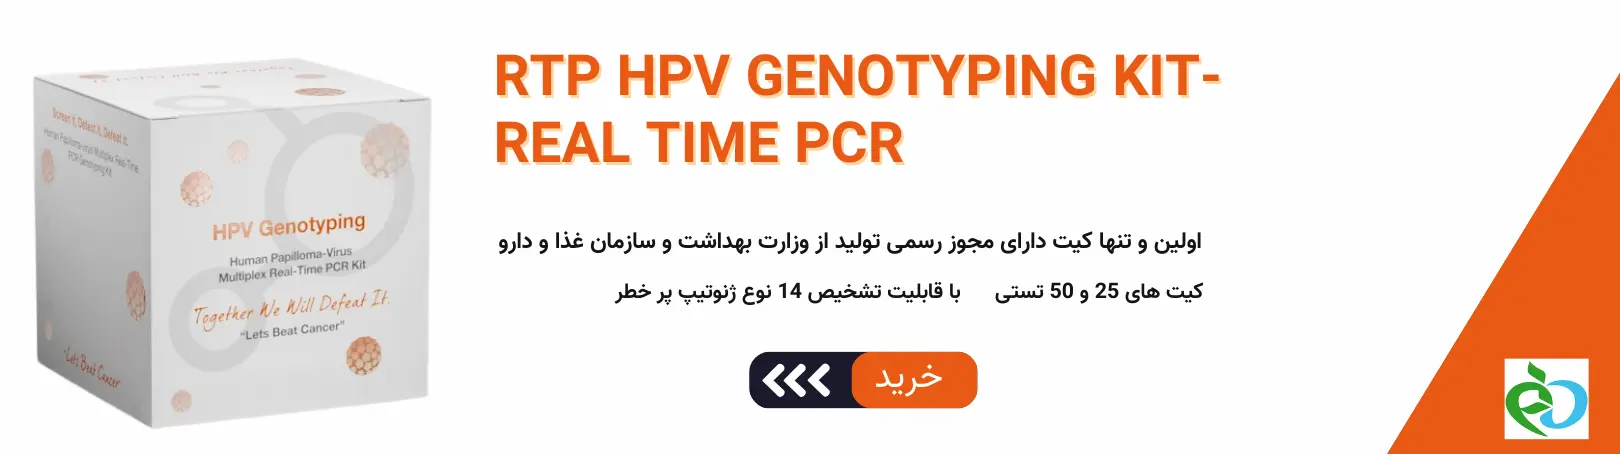 کیت HPV ایرانی